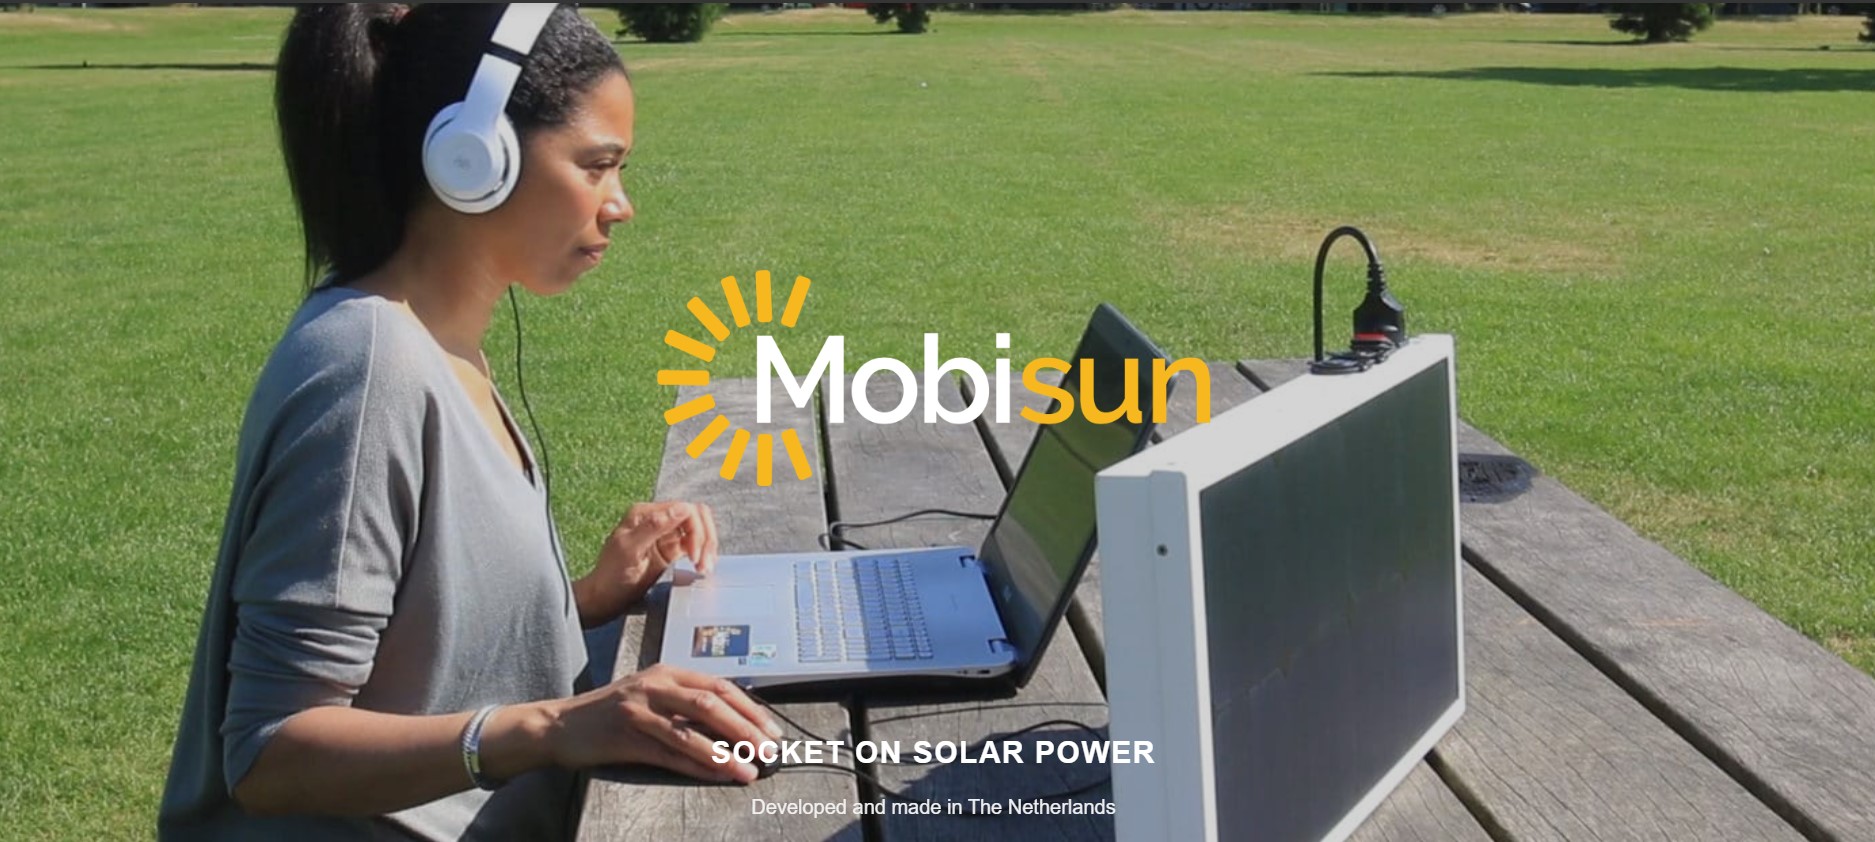 mobisun portable solar panel south africa